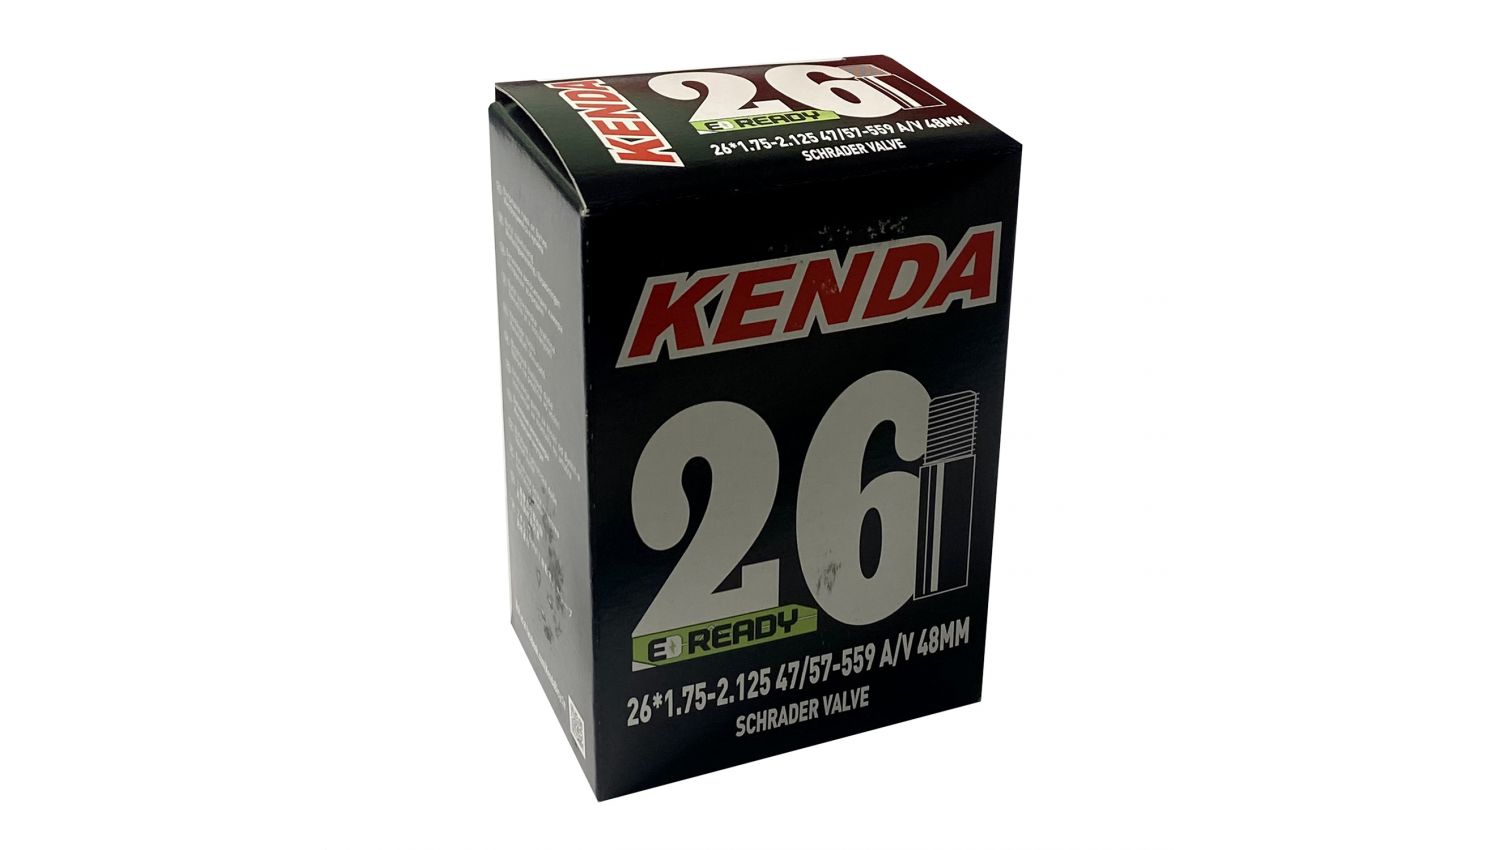 Фотографія Камера KENDA 26x1.75-2.125, A/V-48 мм, 47/57-559, у коробці